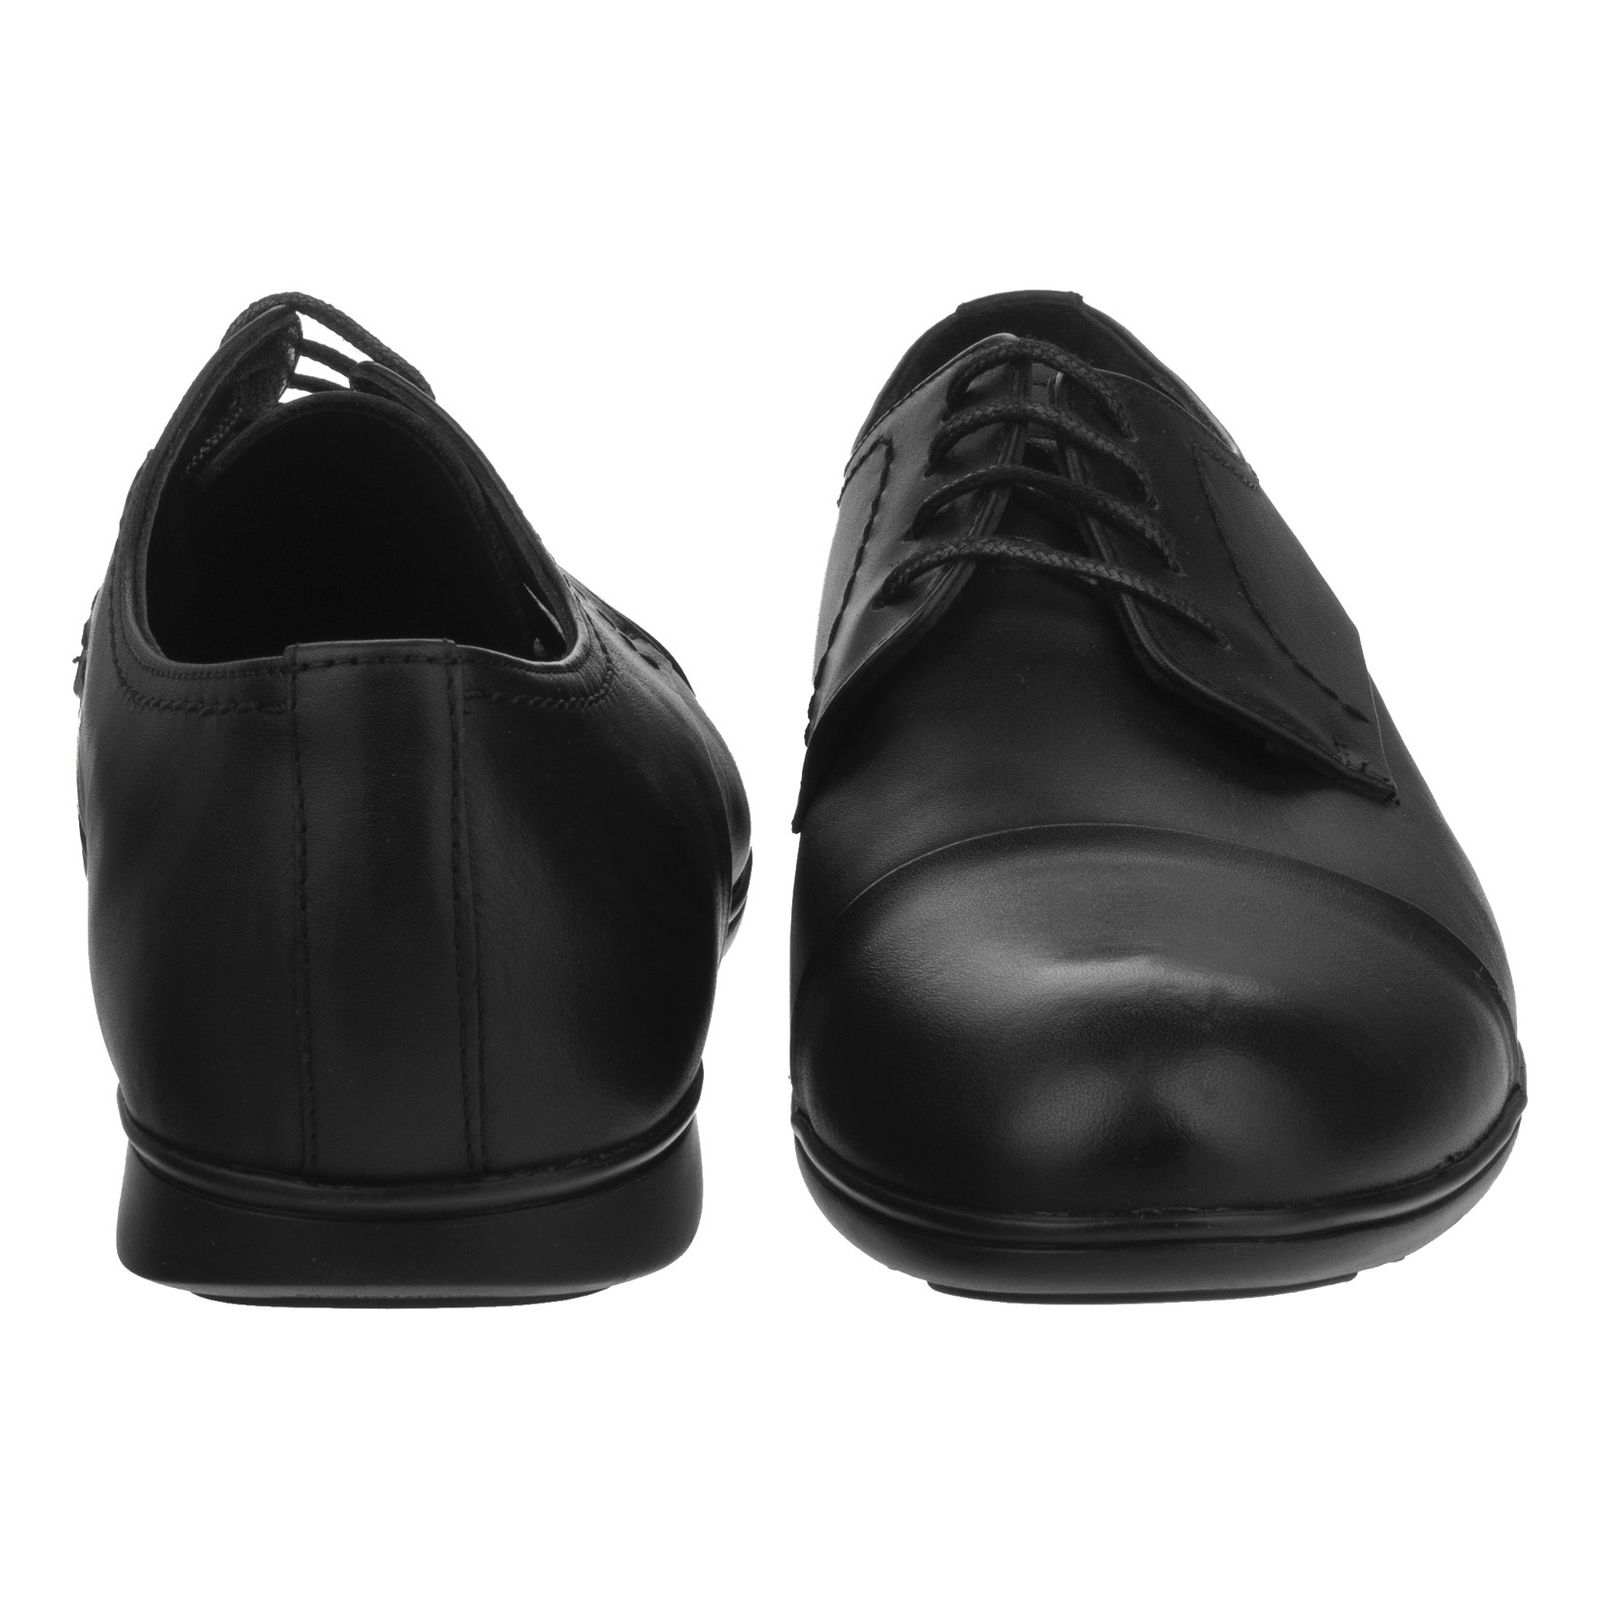 کفش مردانه گاندو مدل 713-99 - مشکی - 5